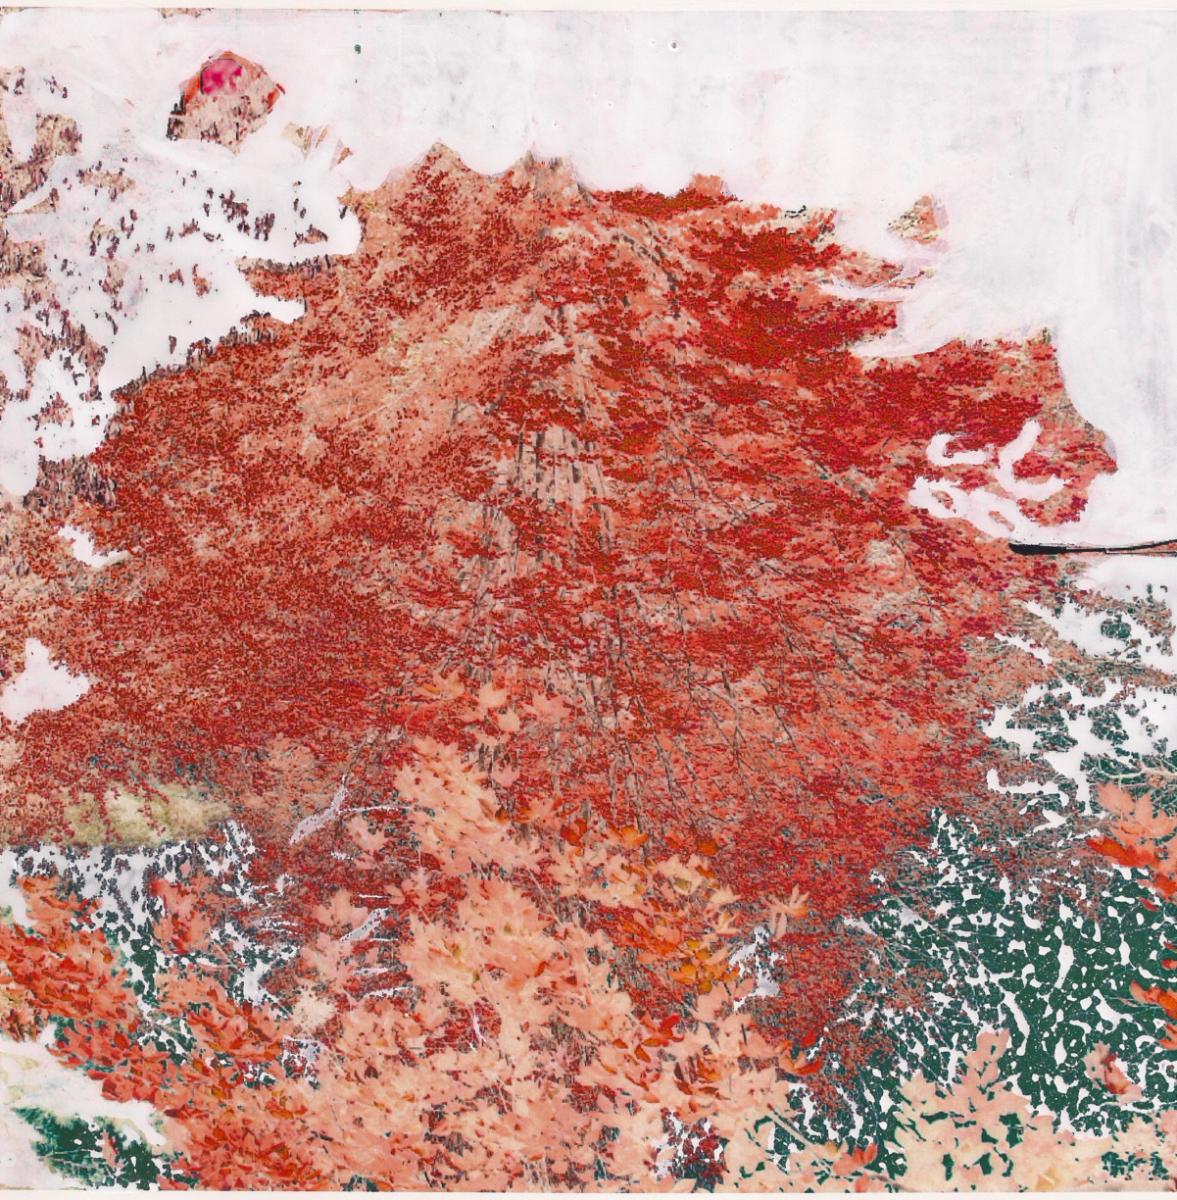 Burning (Rot) Bush: Original abstraktes Landschaftsgemälde auf Farbfotografie